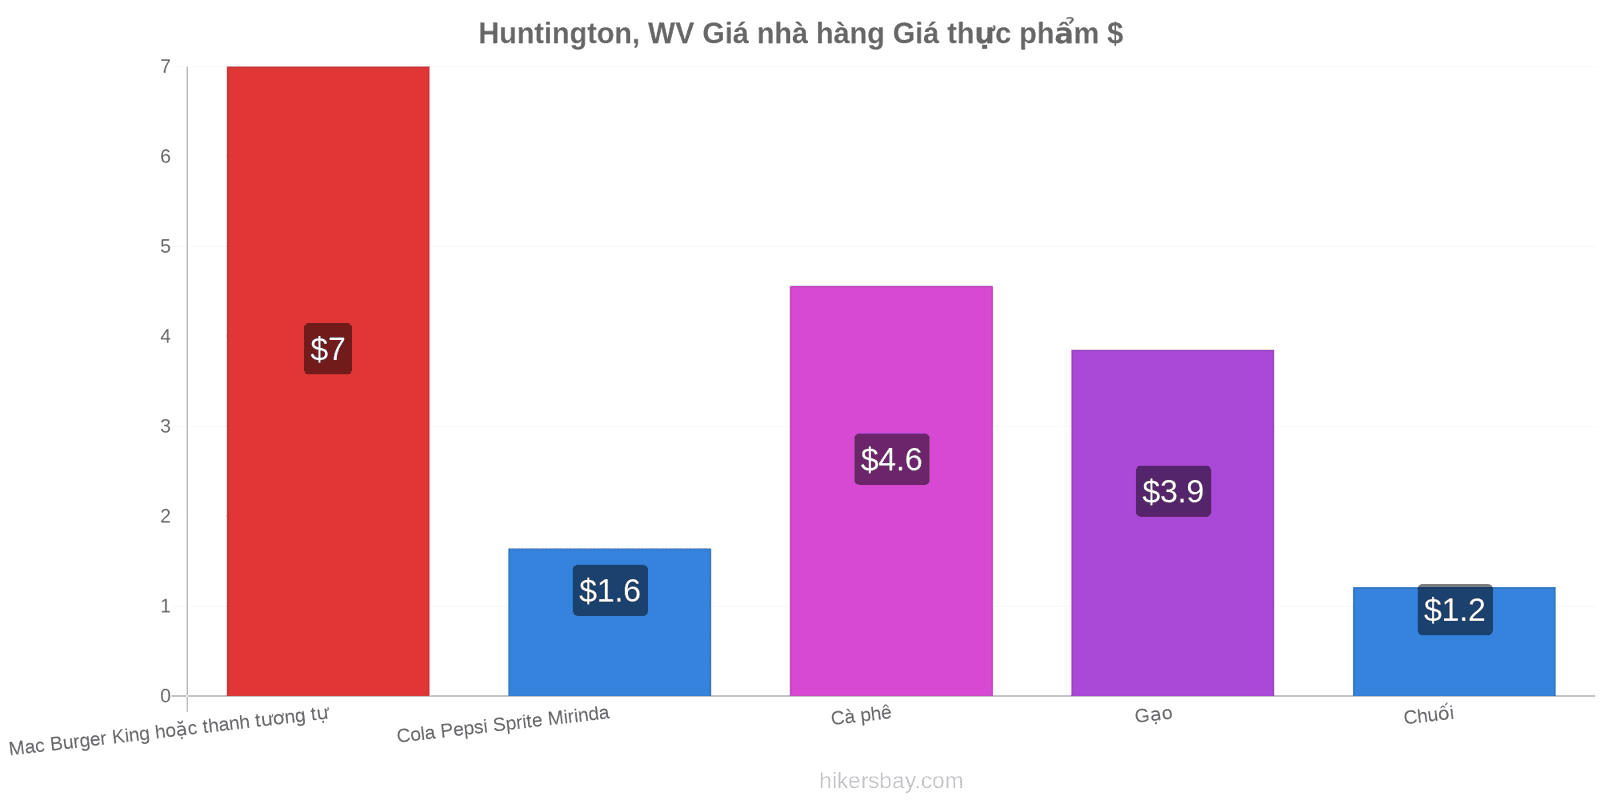 Huntington, WV thay đổi giá cả hikersbay.com